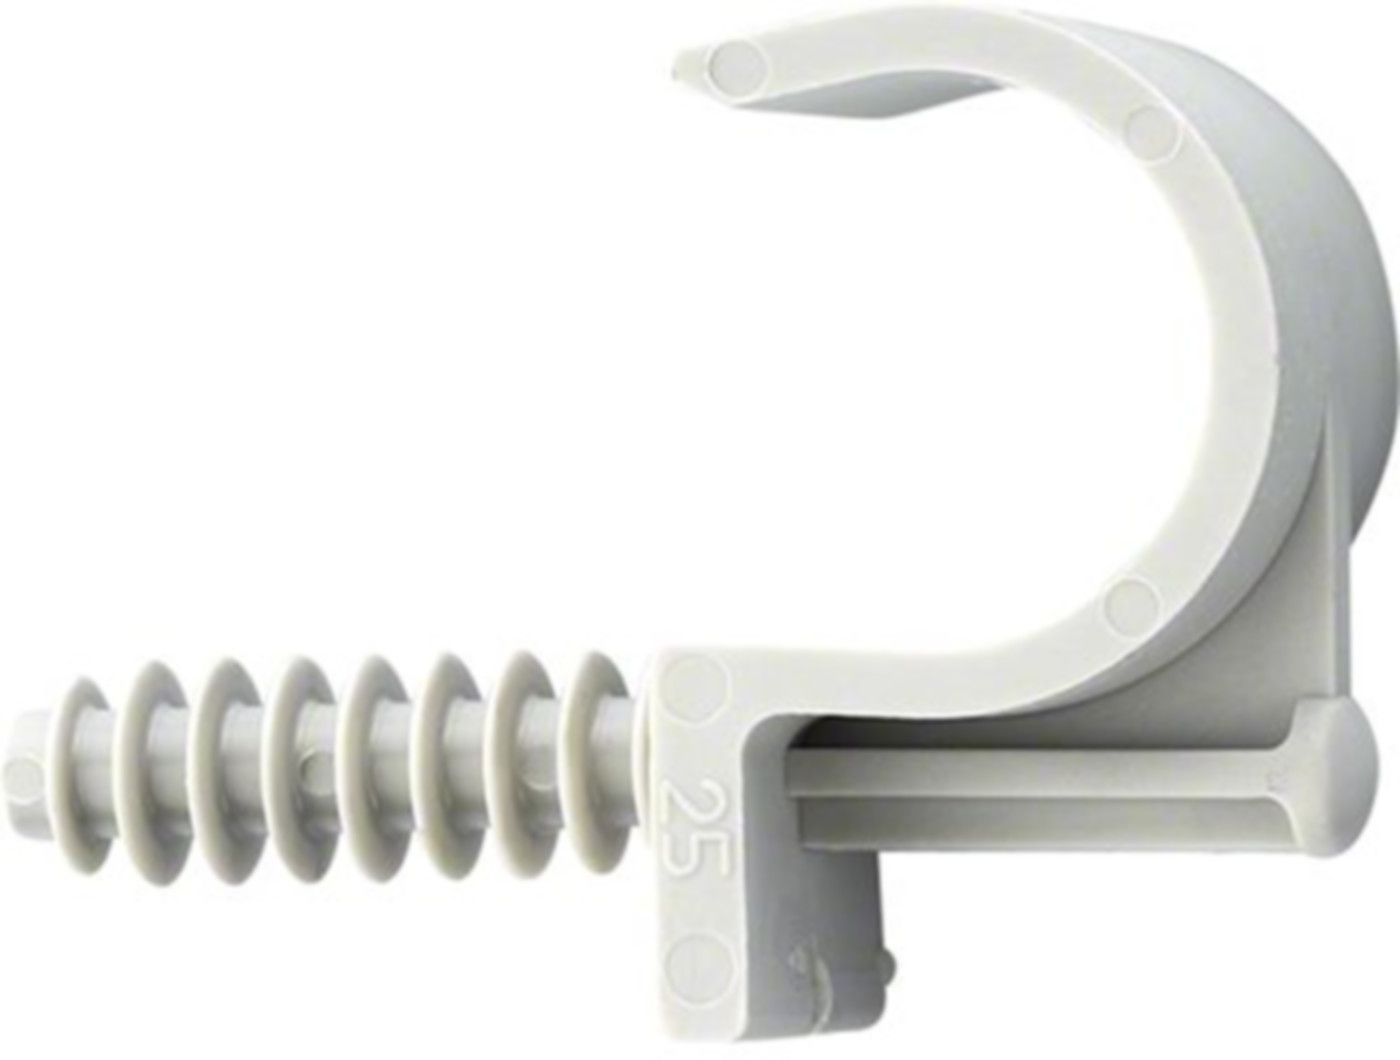 Kunststoff-Briden grau einfach FIX-RING 20mm A 94.153 - Rohrschellen/Briden aus Kunststoff